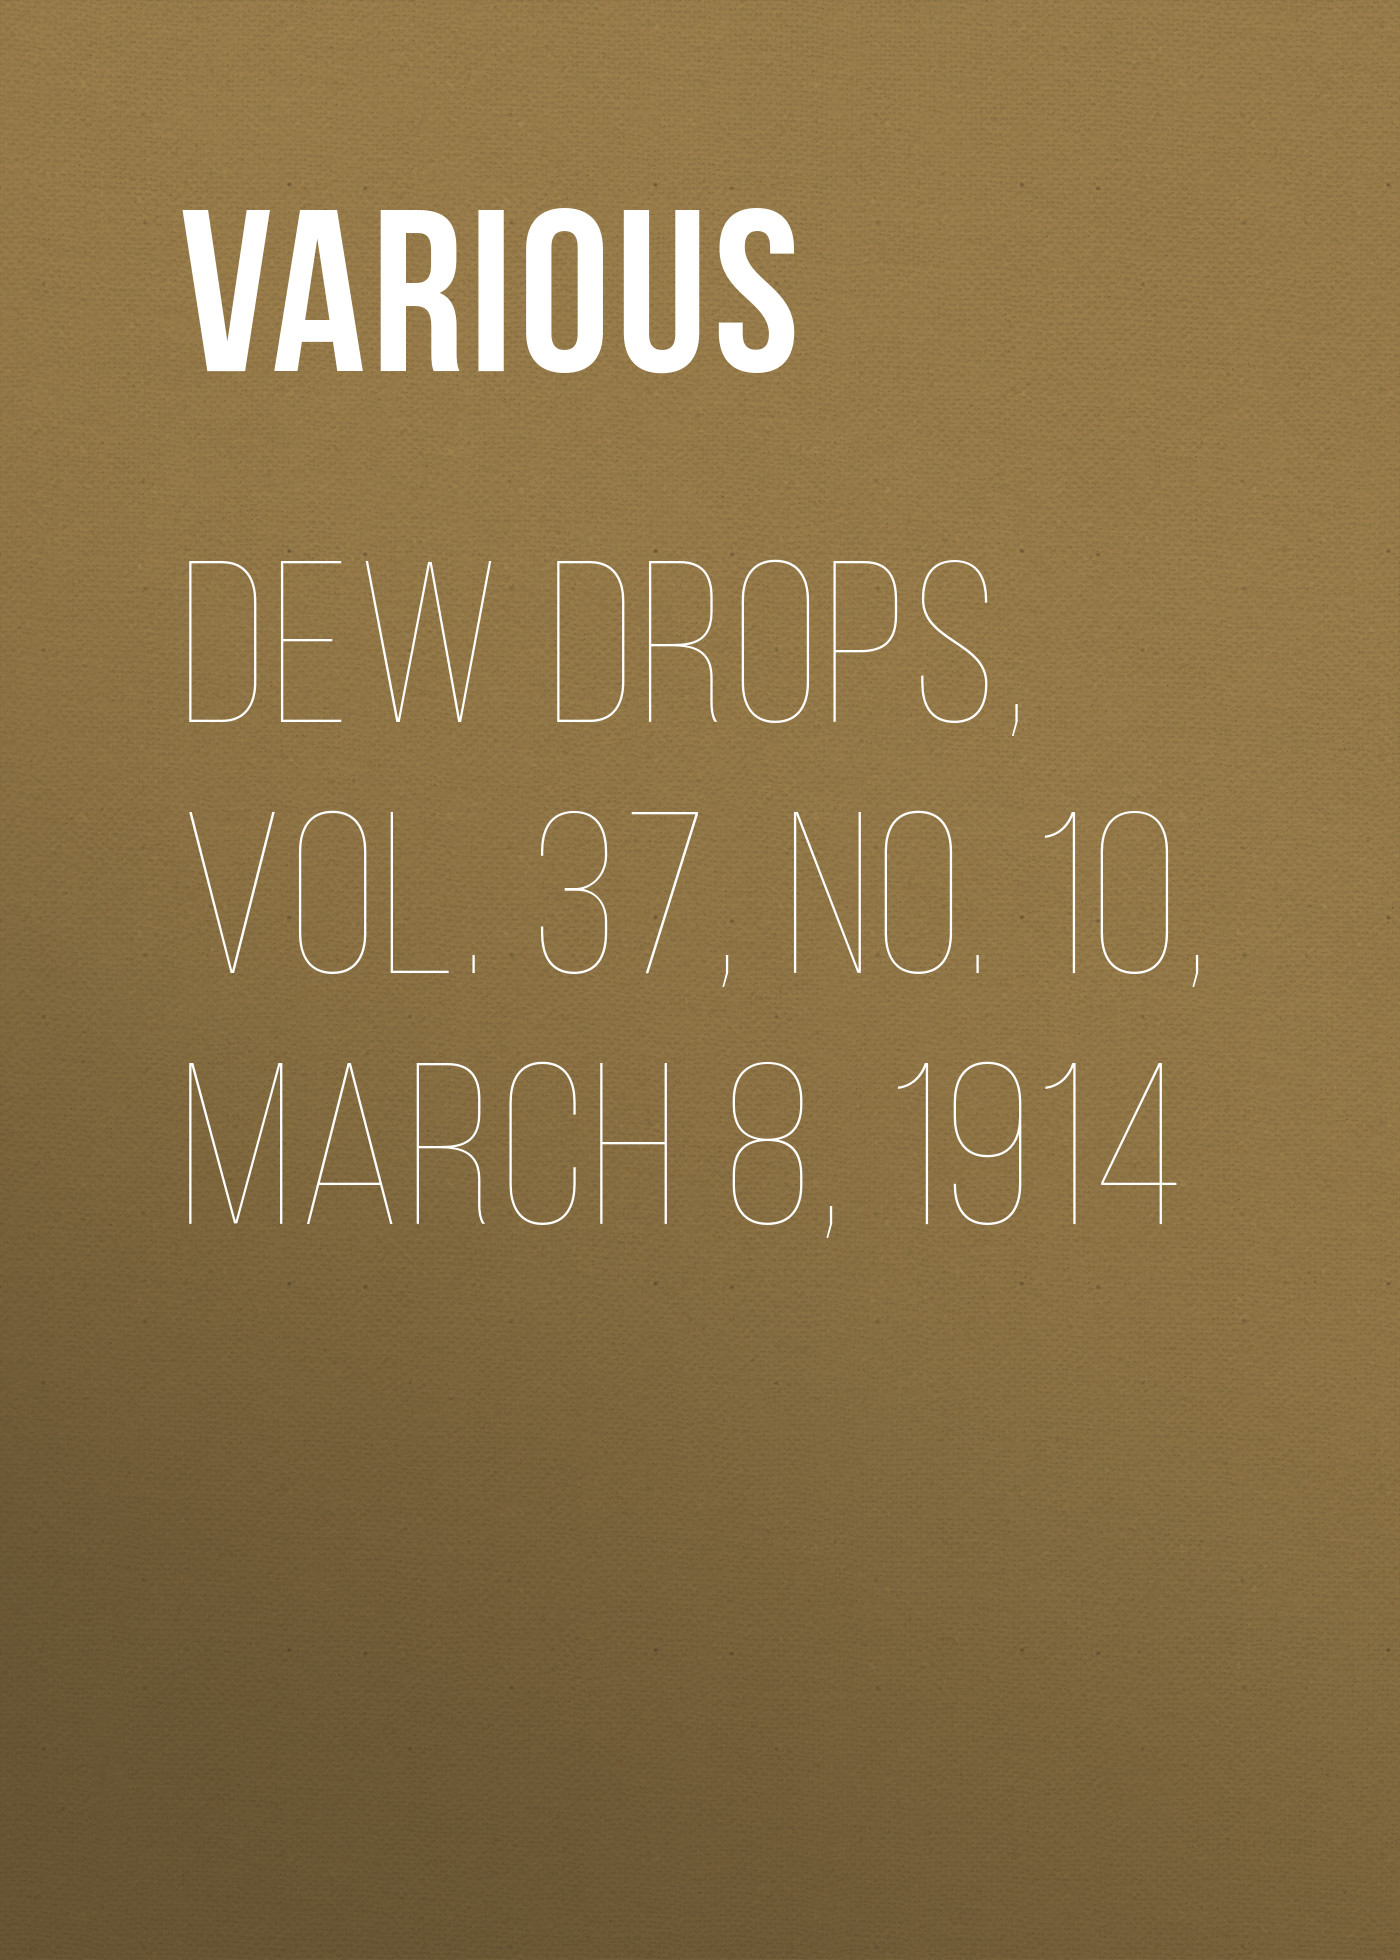 Dew Drops, Vol. 37, No. 10, March 8, 1914